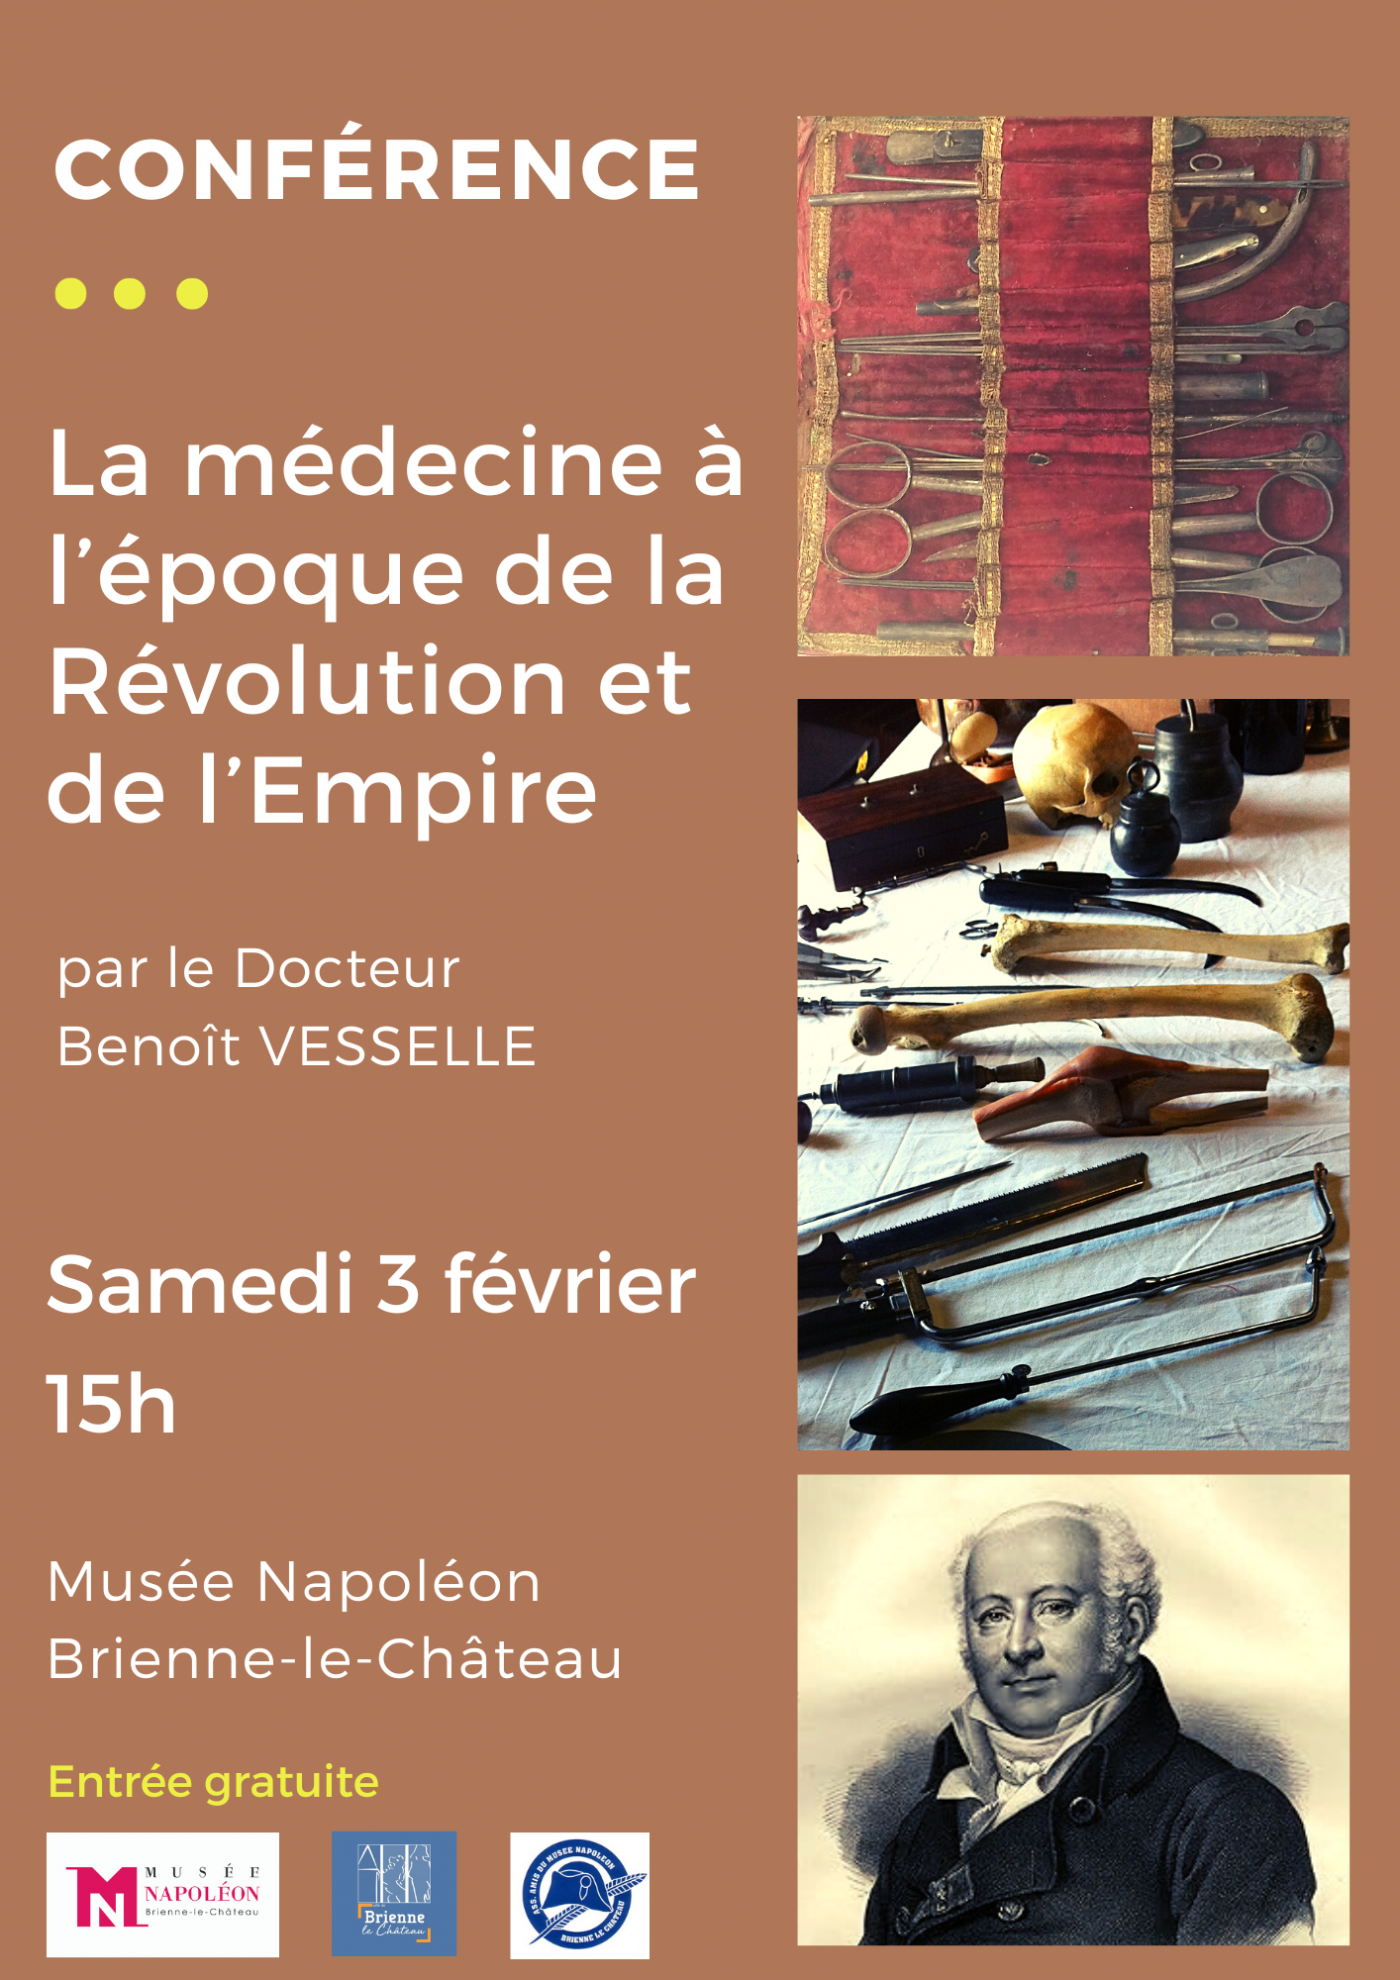 Conférence "La médecine à l'époque de la Révolution et de l'Empire"